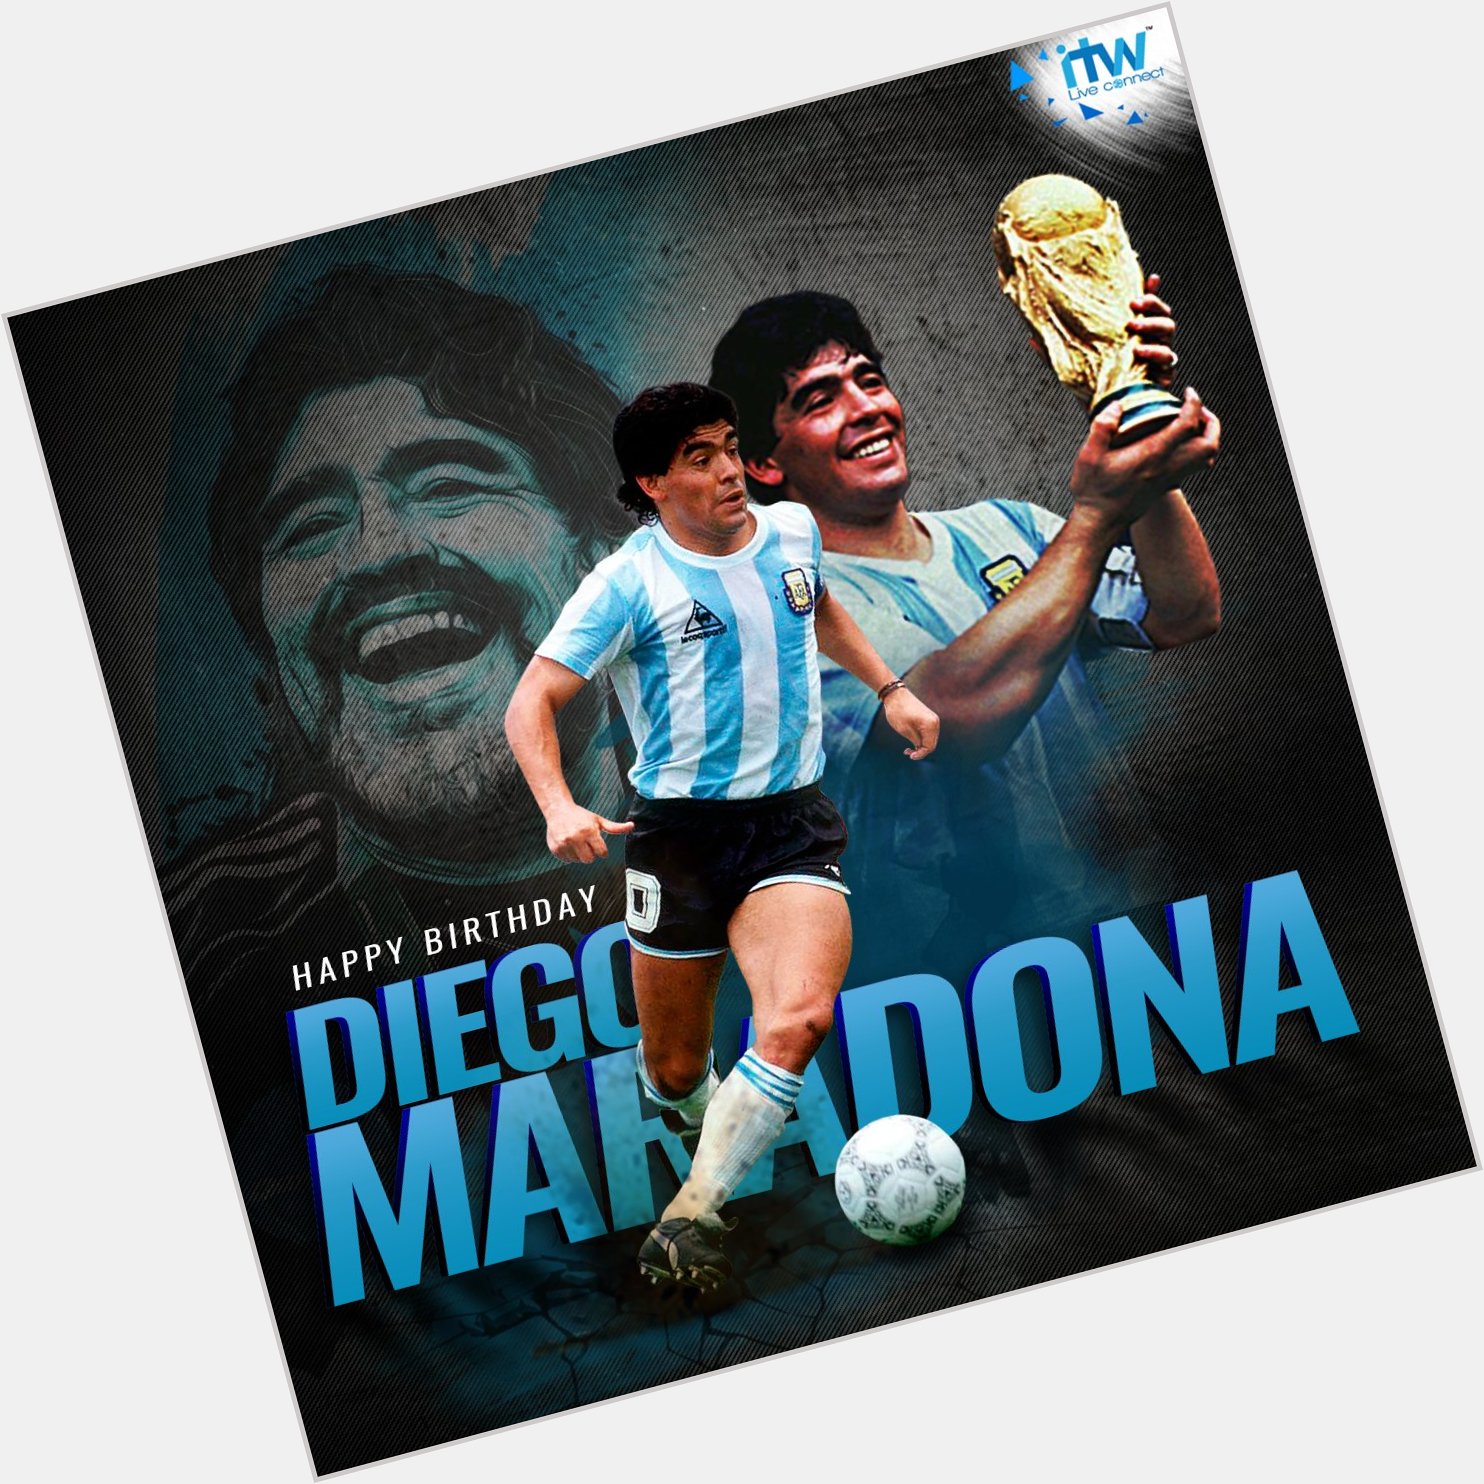 Wishing a very Happy Birthday to the legendary Diego Maradona! 